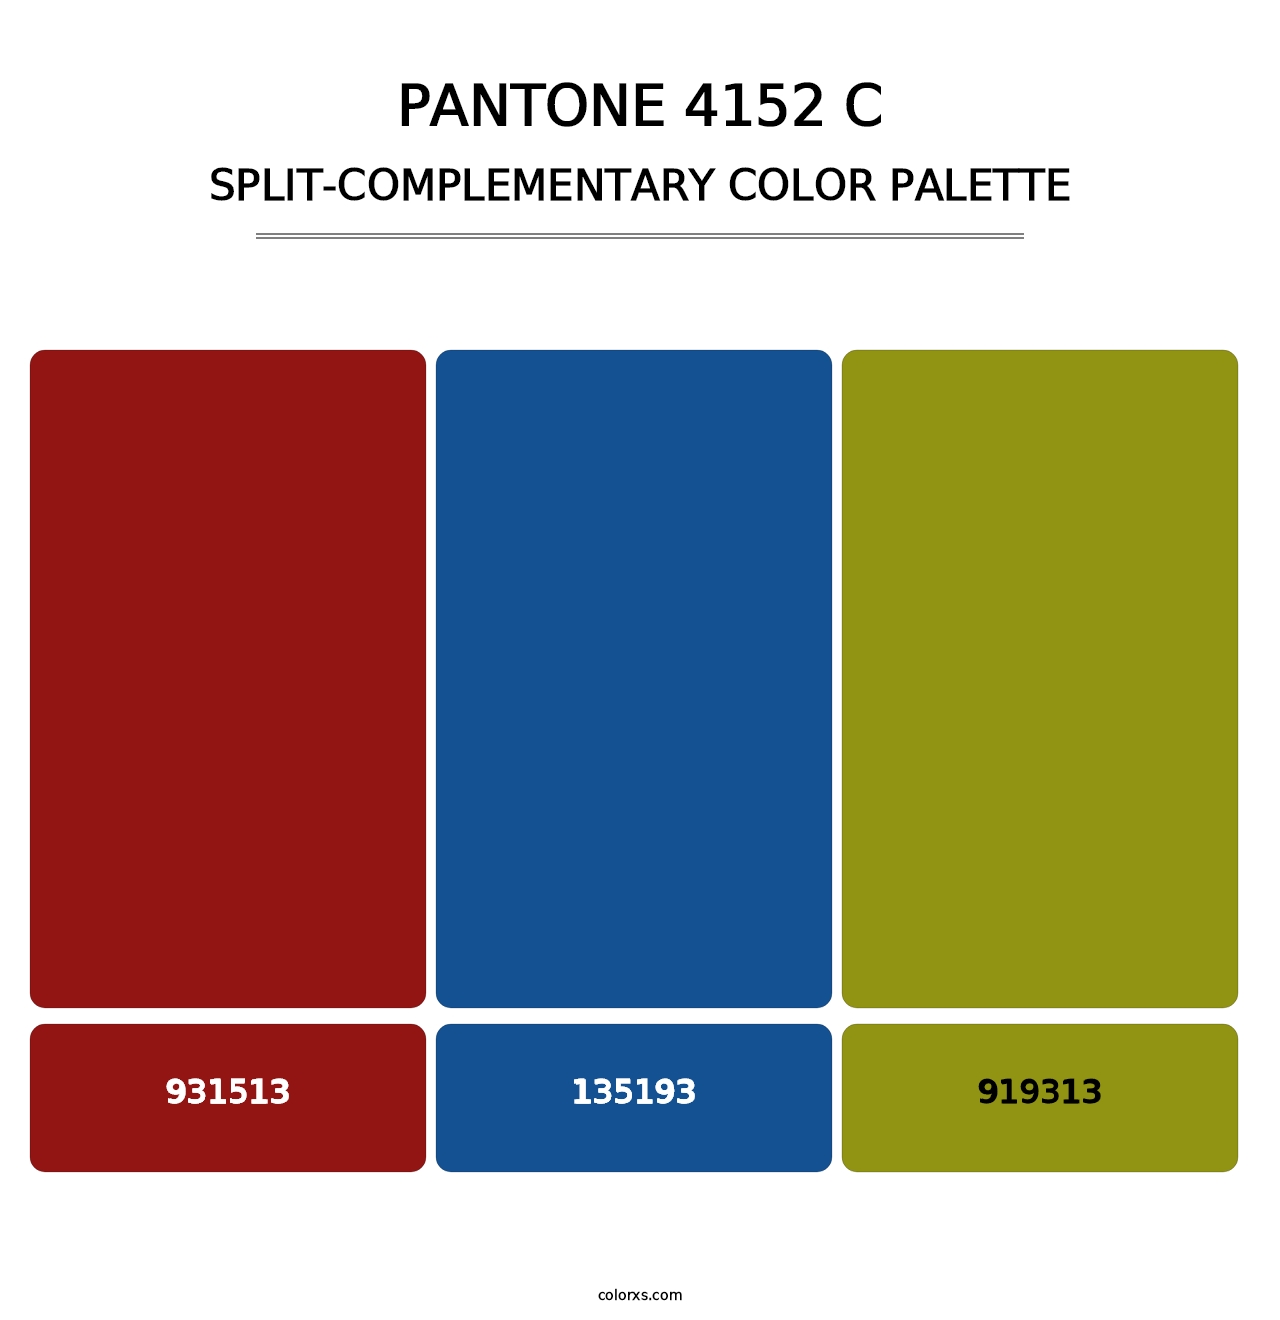 PANTONE 4152 C - Split-Complementary Color Palette